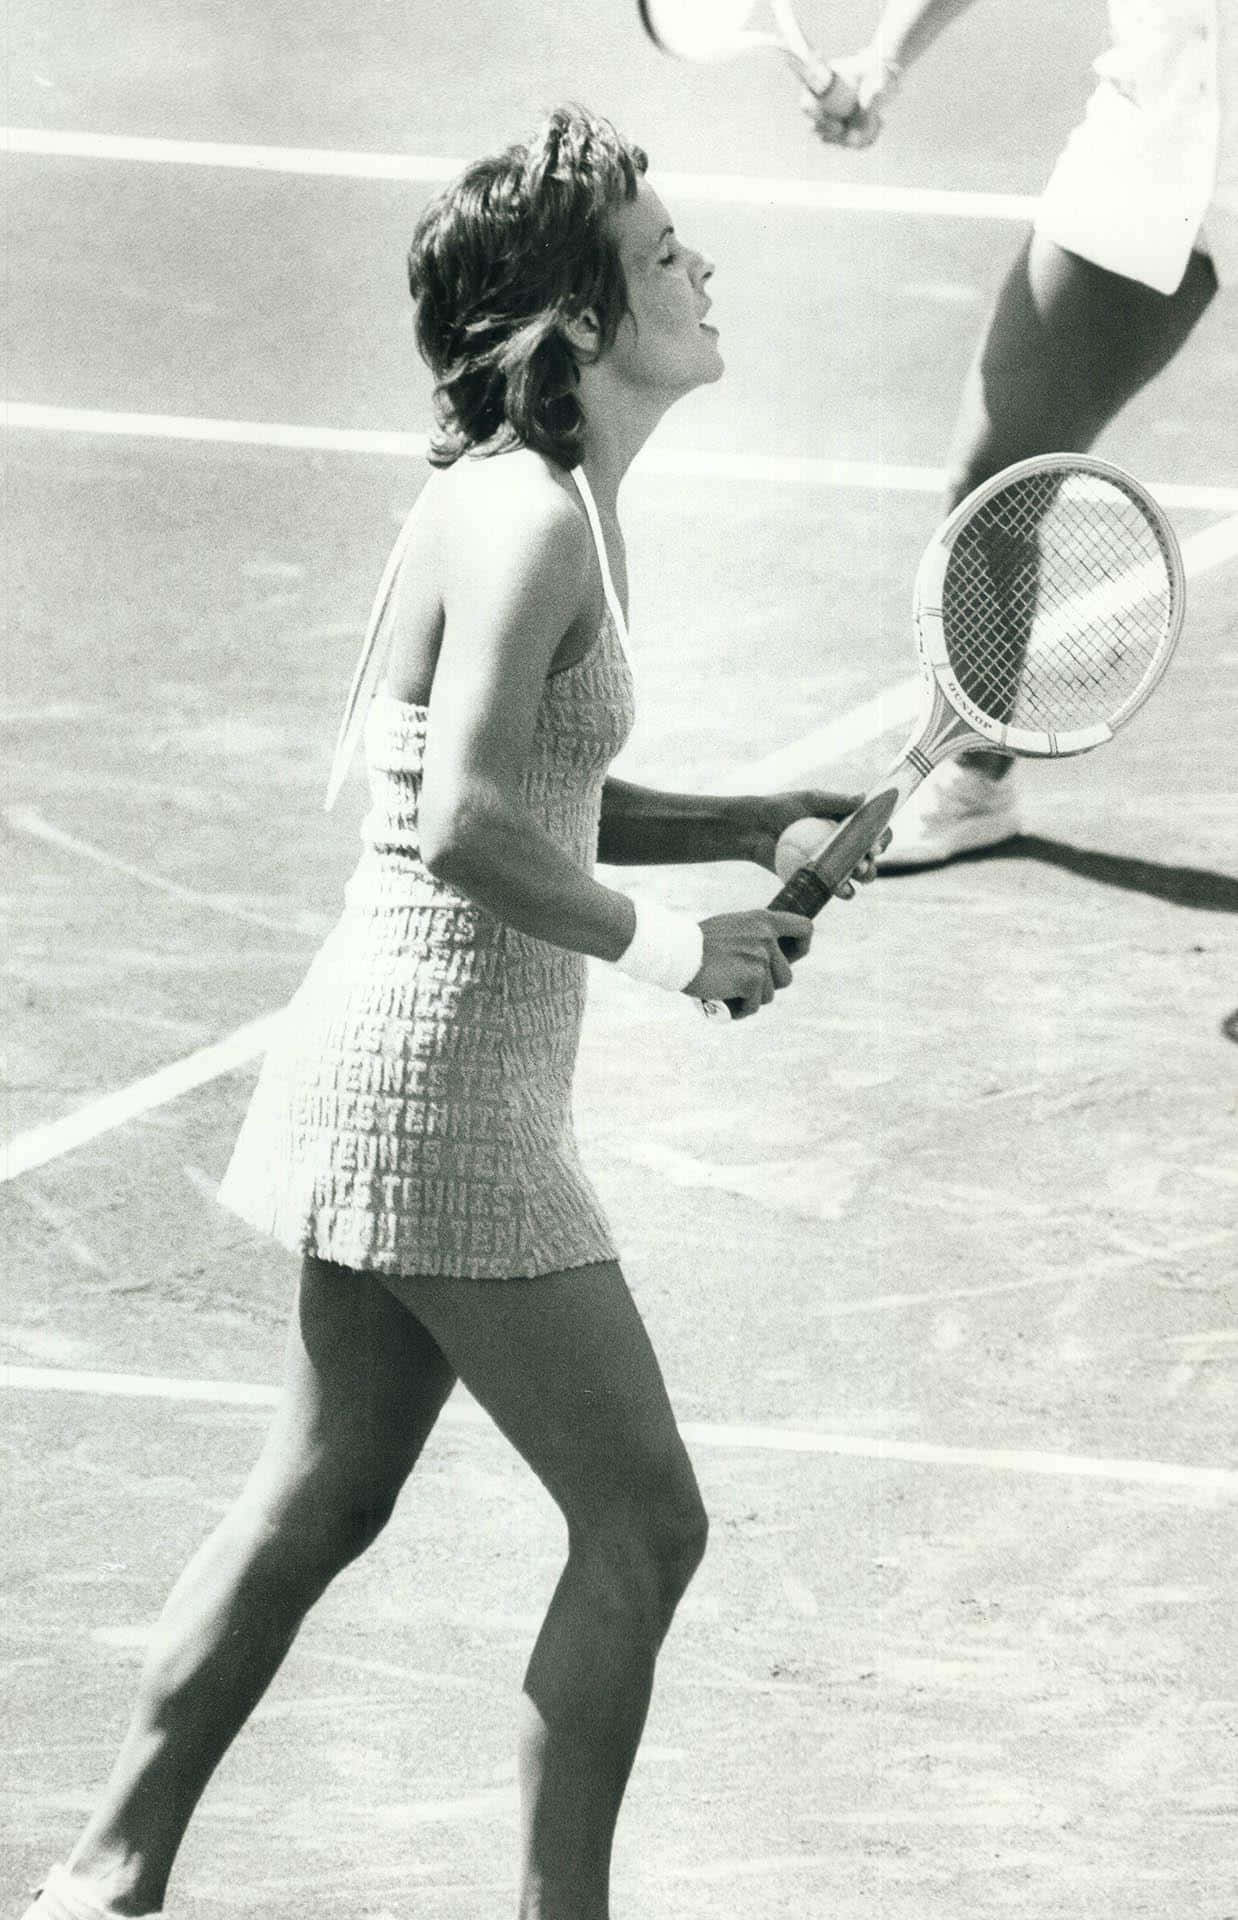 Tennisspielerinevonne Goolagong Cawley In Graustufen Wallpaper